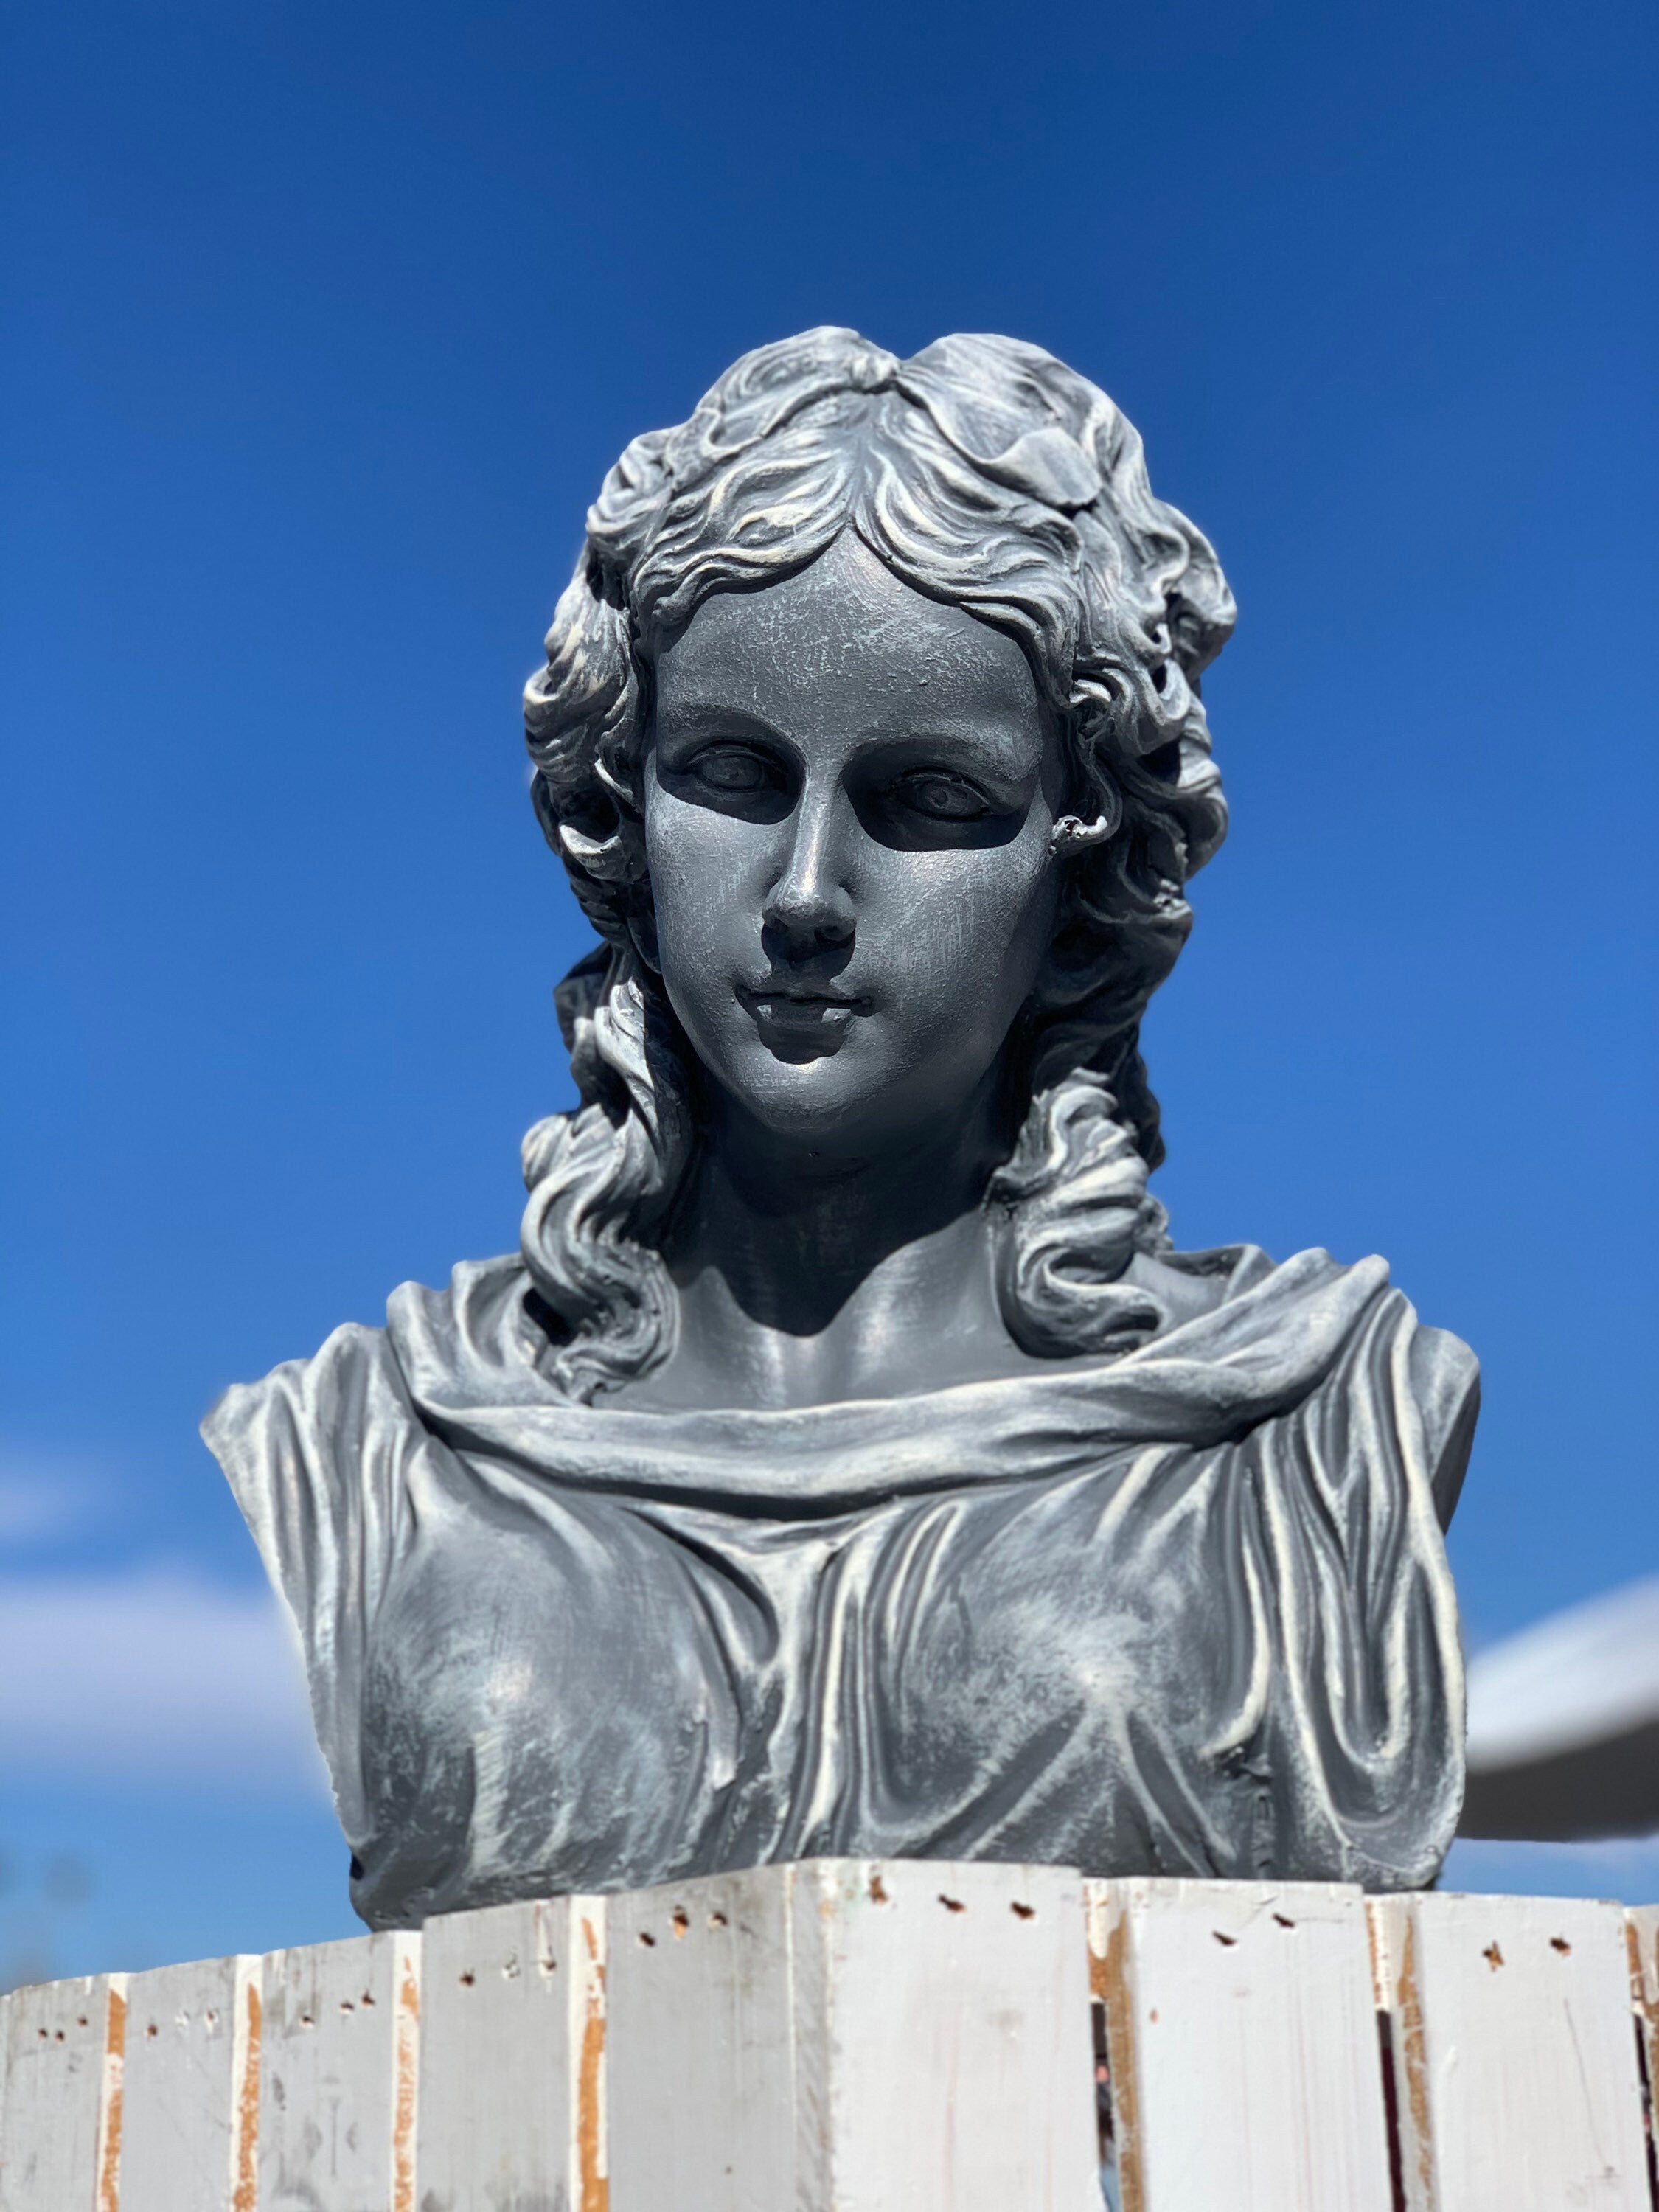 Hera Bust Statue, Large Female Sculpture, Pop Art Sculpture, Greek Bus –  Jasmin Decor Inc.